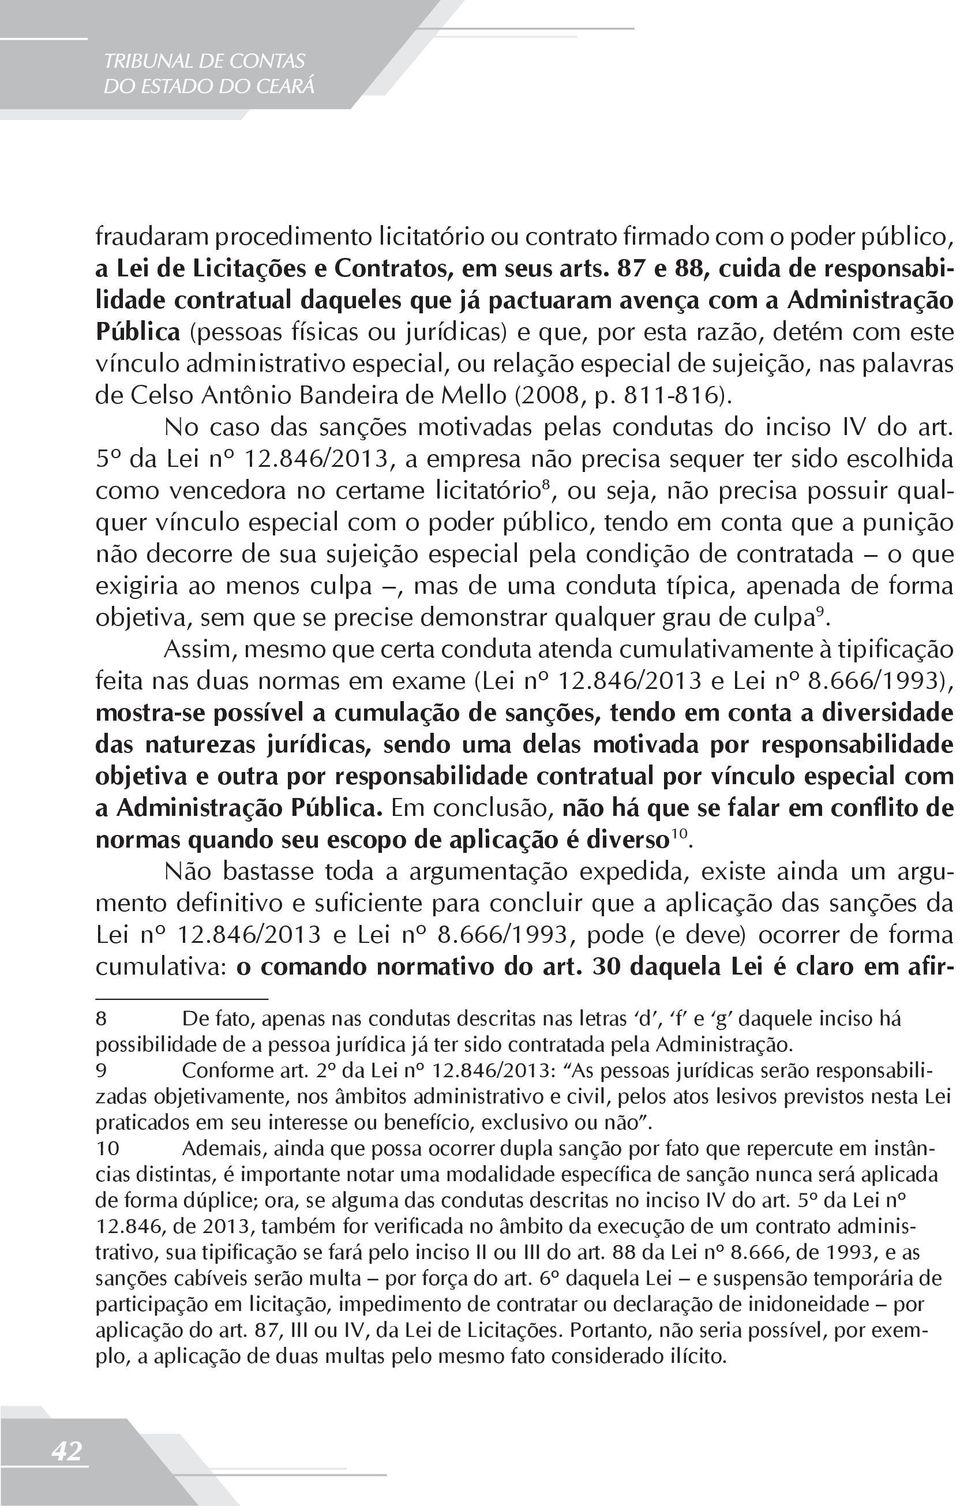 especial, ou relação especial de sujeição, nas palavras de Celso Antônio Bandeira de Mello (2008, p. 811-816). No caso das sanções motivadas pelas condutas do inciso IV do art. 5º da Lei nº 12.